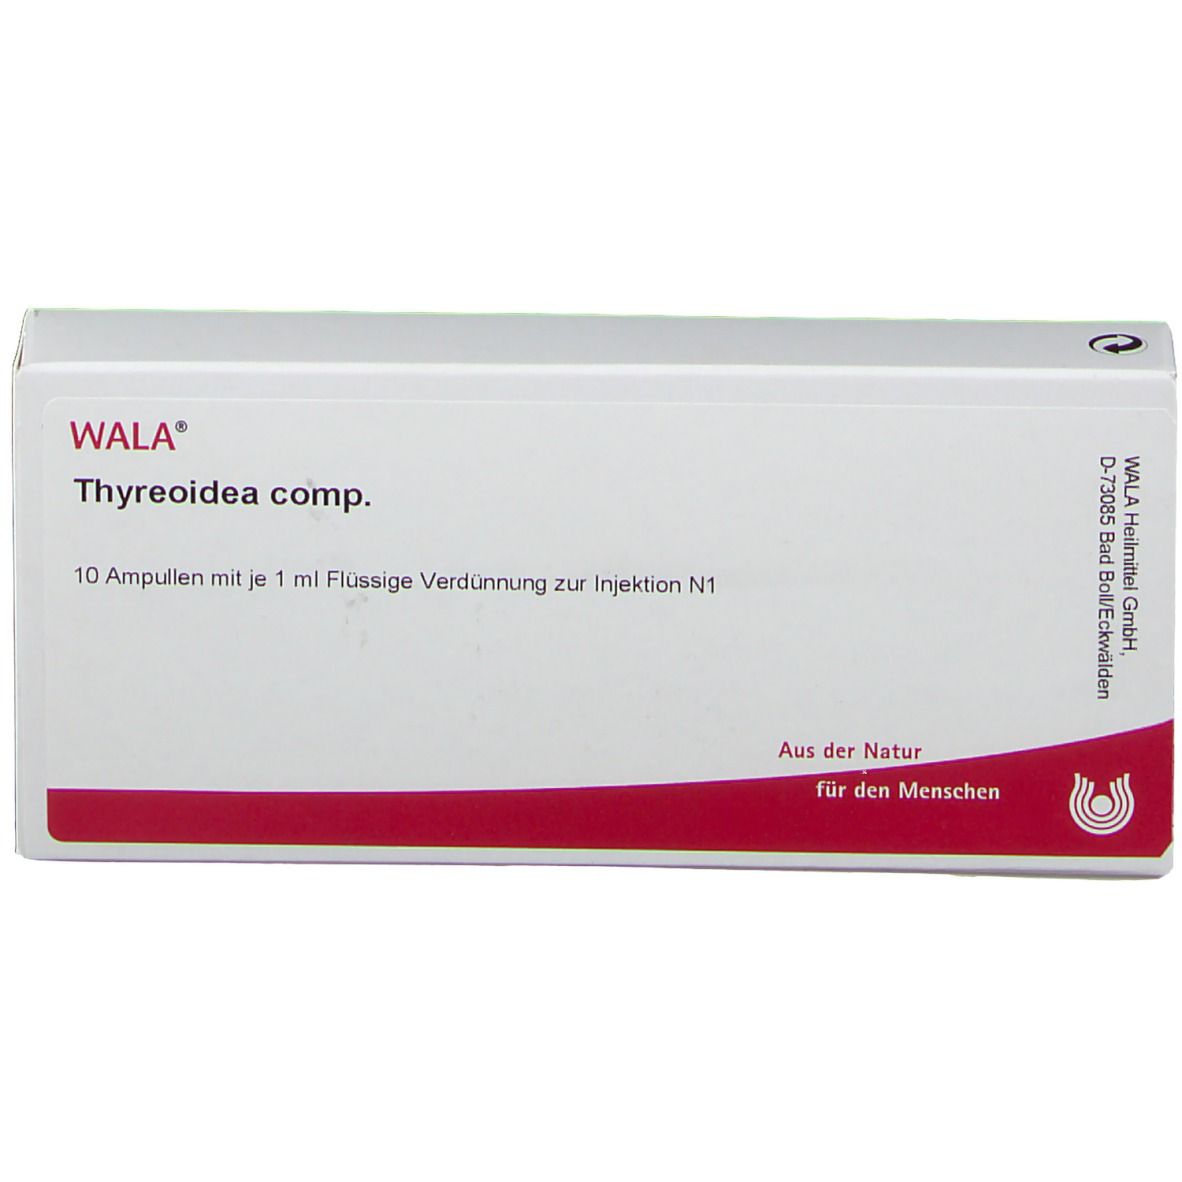 WALA® Thyreoidea Comp. Ampullen